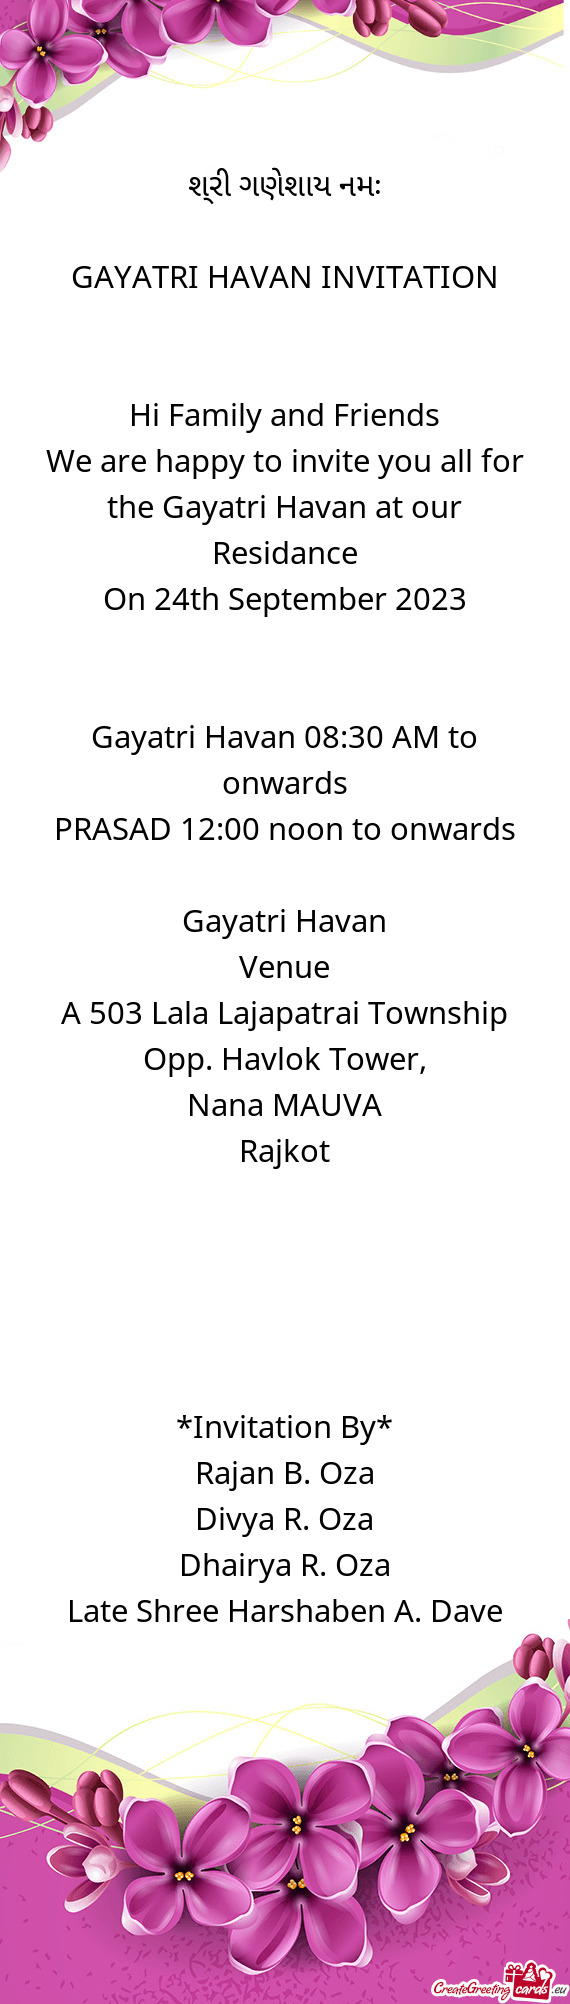 Gayatri Havan 08:30 AM to onwards